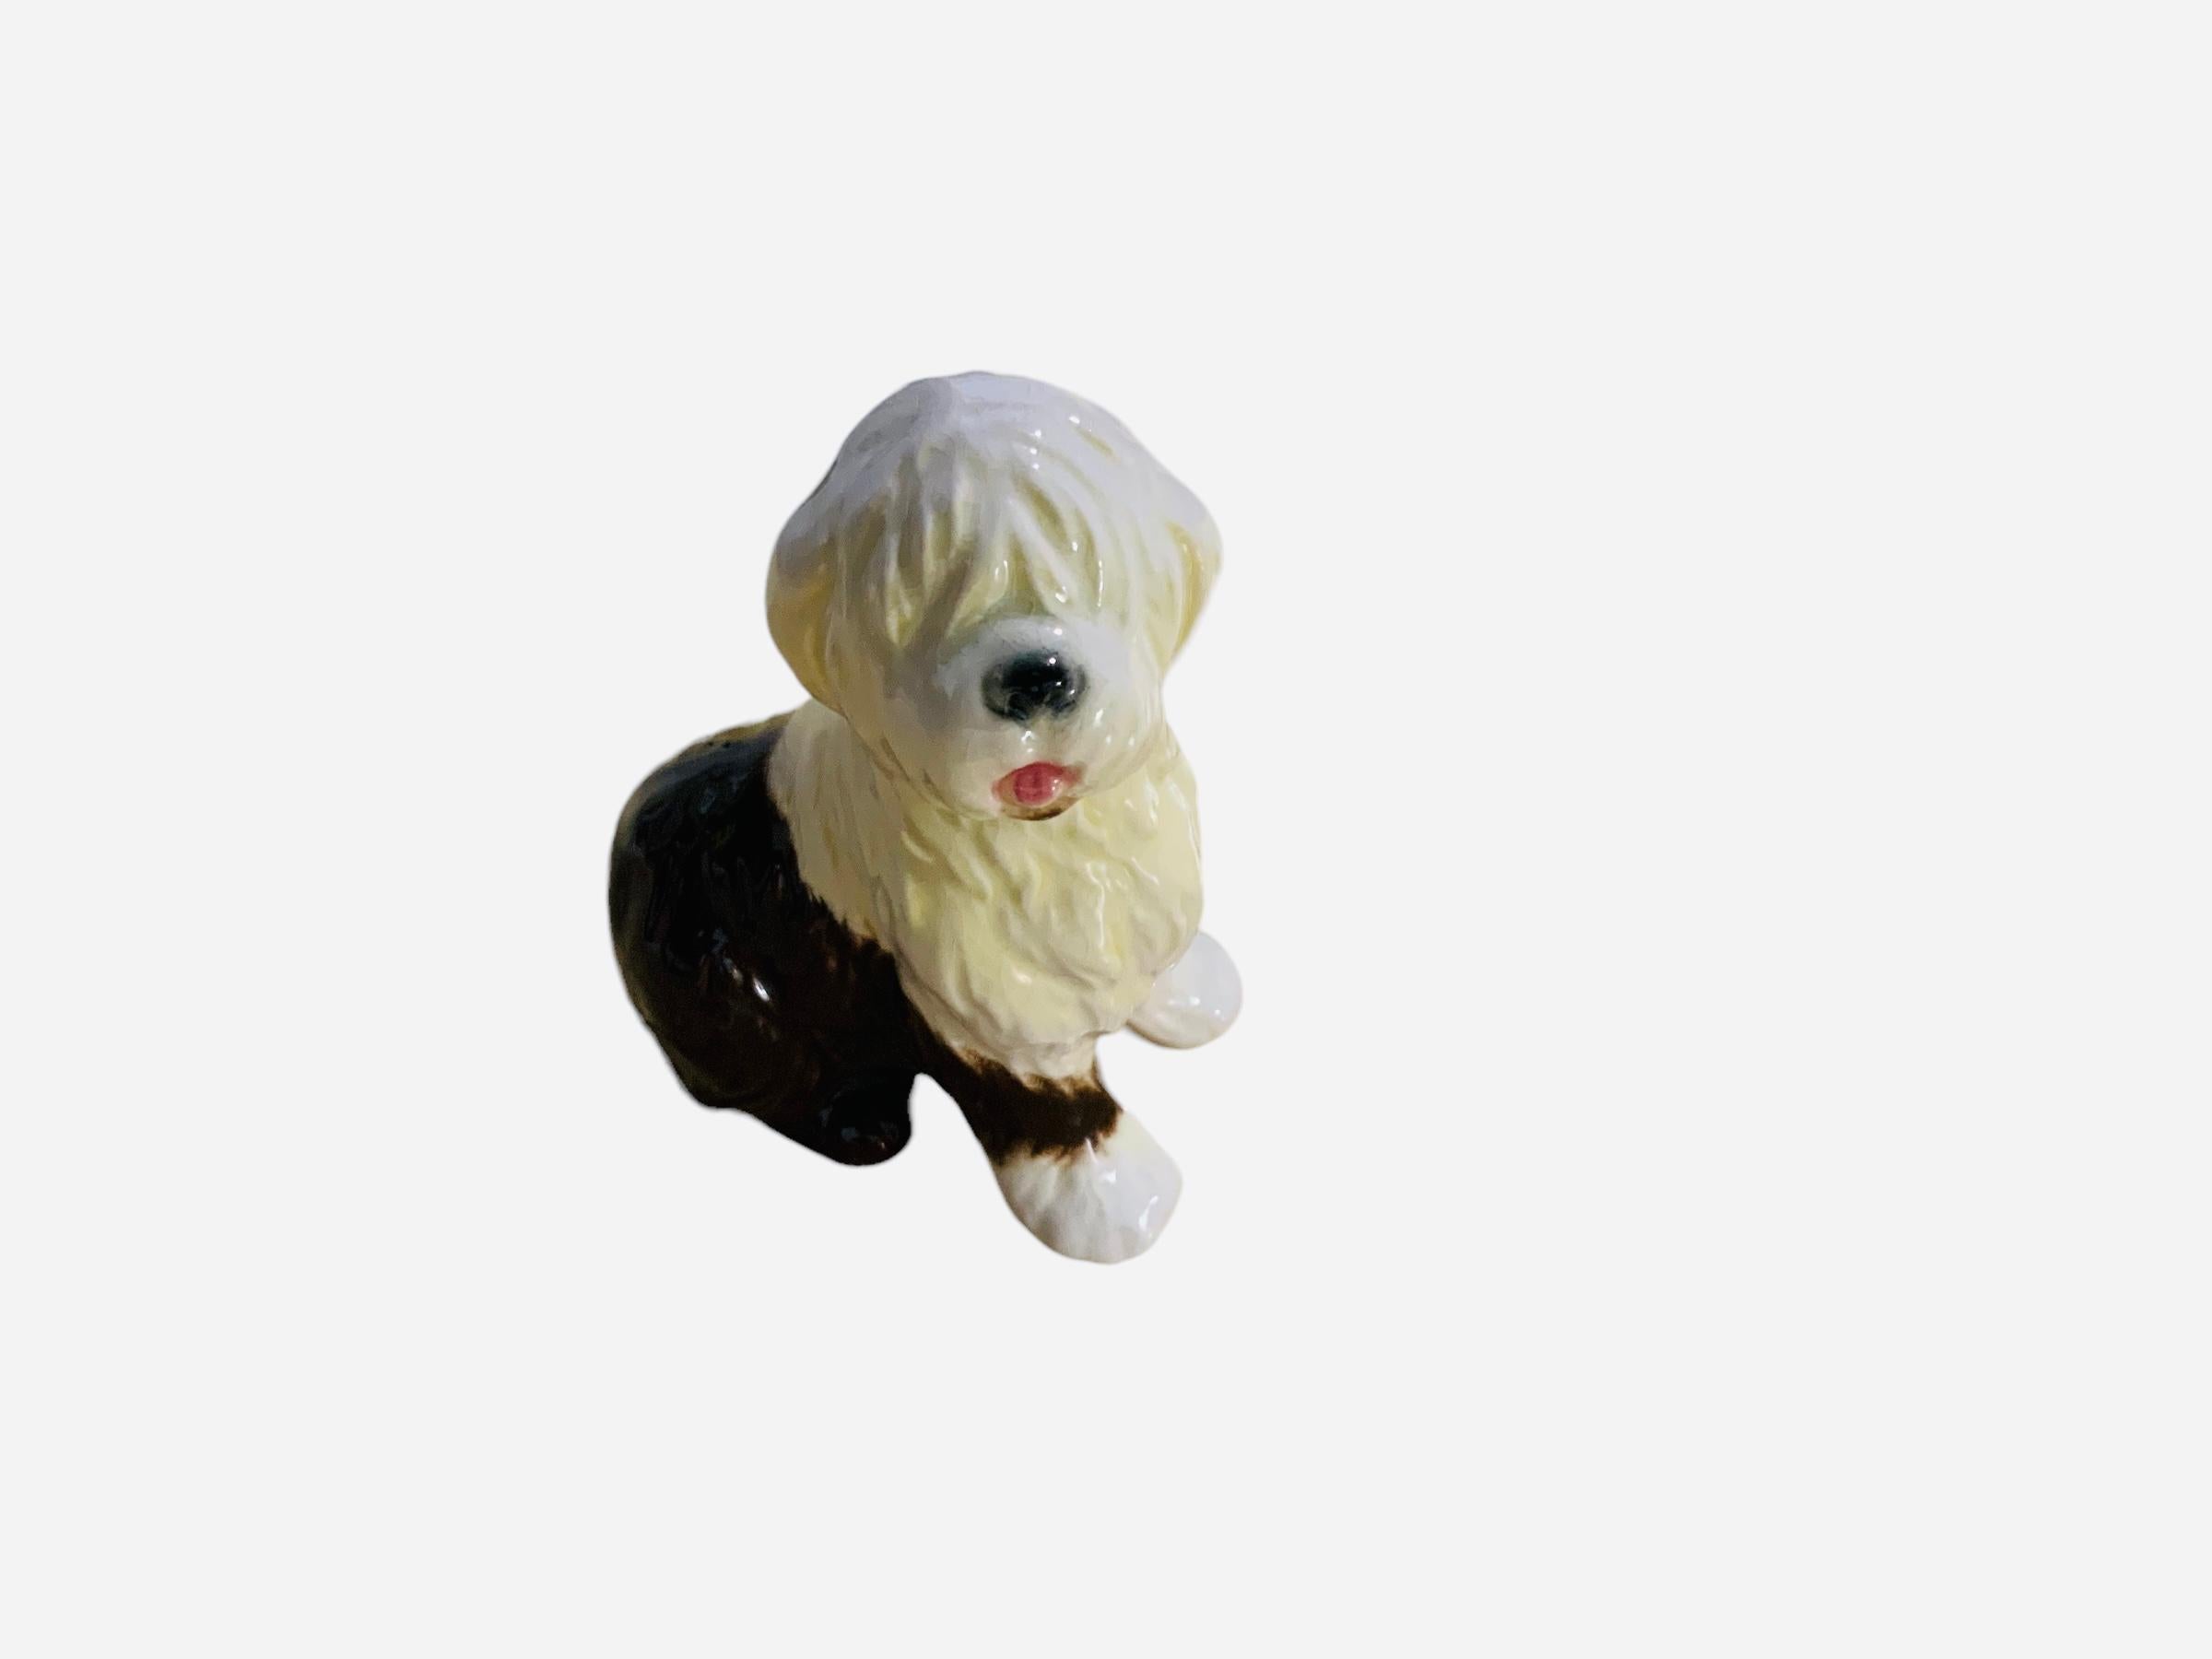 Dies ist eine Goeble Porzellanfigur eines Hundes. Es zeigt einen handgemalten, liebenswerten alten englischen Schäferhund mit weißem und dunkelbraunem Haar, der aufrecht steht. Die Goeble-Punze befindet sich unterhalb der Figur.